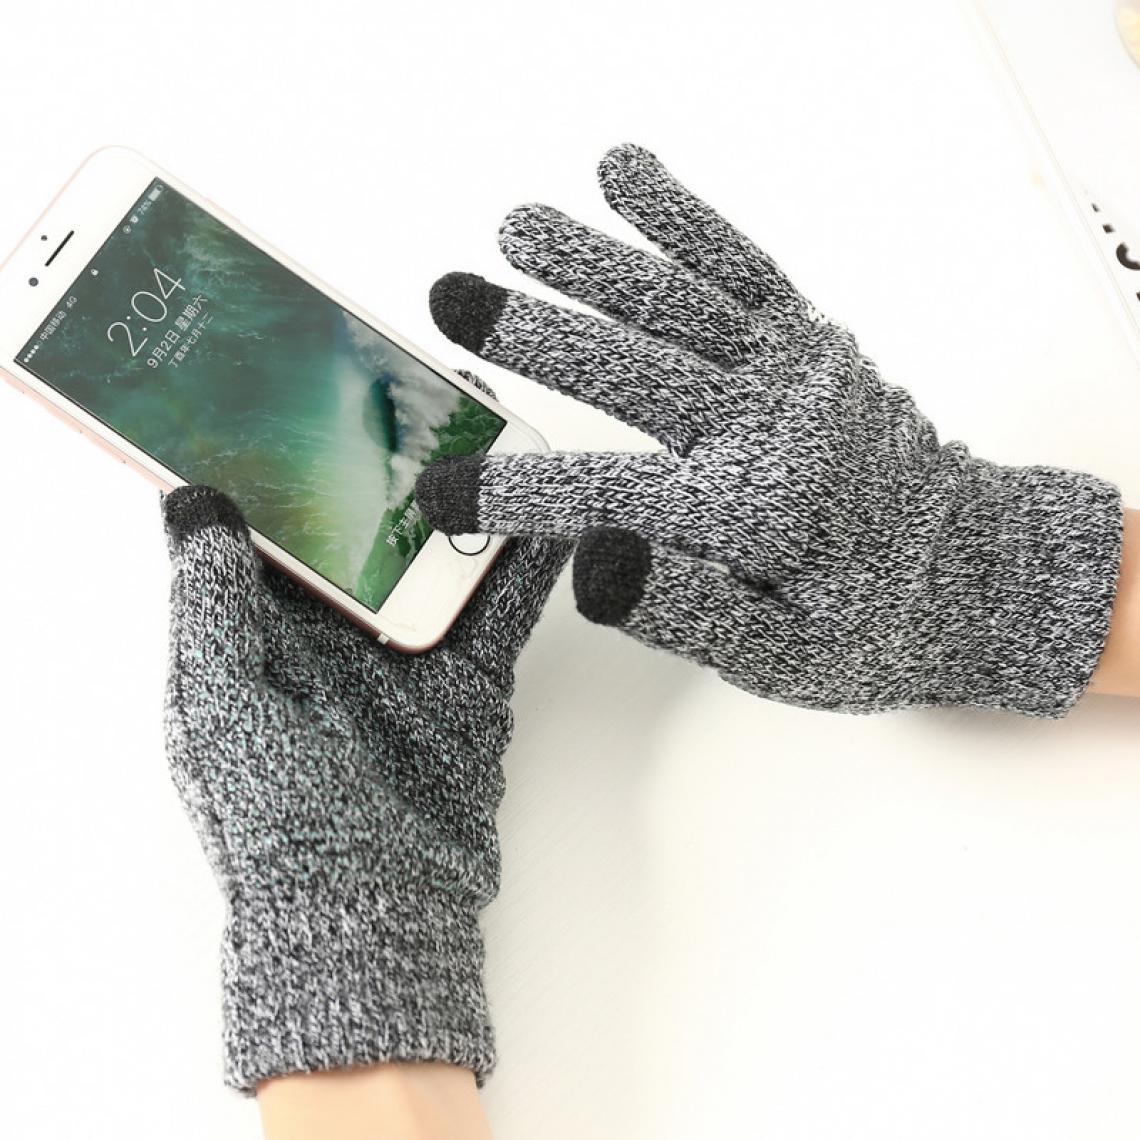 Shot - Gants Homme tactiles pour XIAOMI Redmi Note 5 Smartphone Taille M 3 doigts Hiver (NOIR) - Autres accessoires smartphone